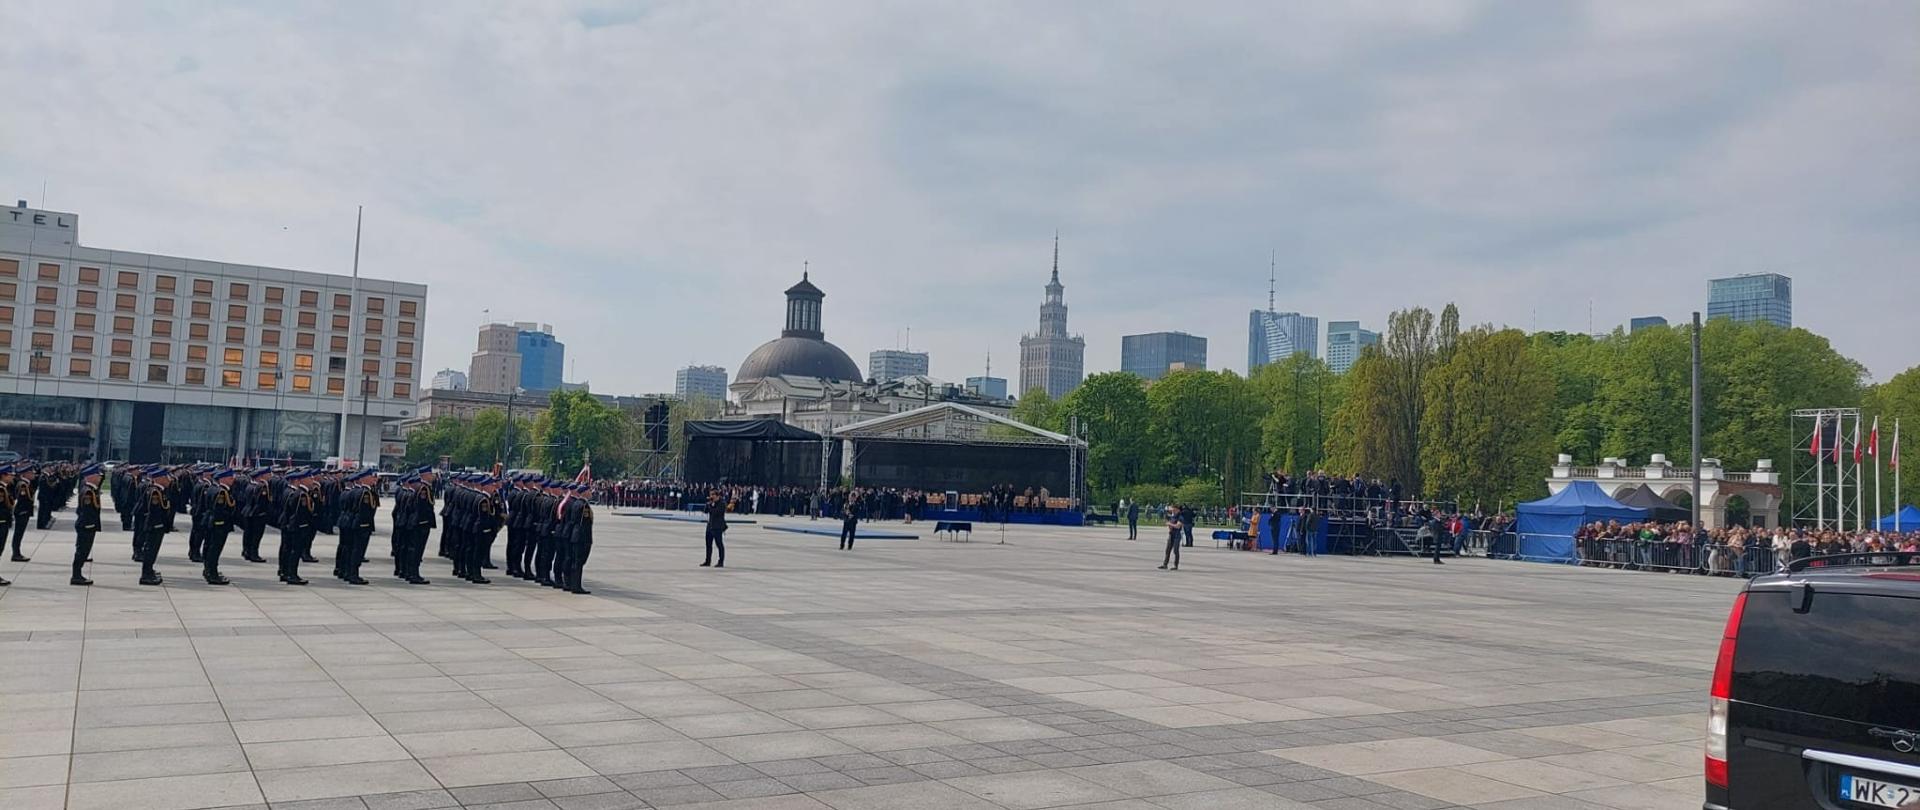 Zdjęcie przedstawia plac Marszałka Józefa Piłsudskiego w Warszawie. W kolumnie stoją strażacy w galowych mundurach. Przed nimi stoi pusta scena, dookoła widać tłum widzów.